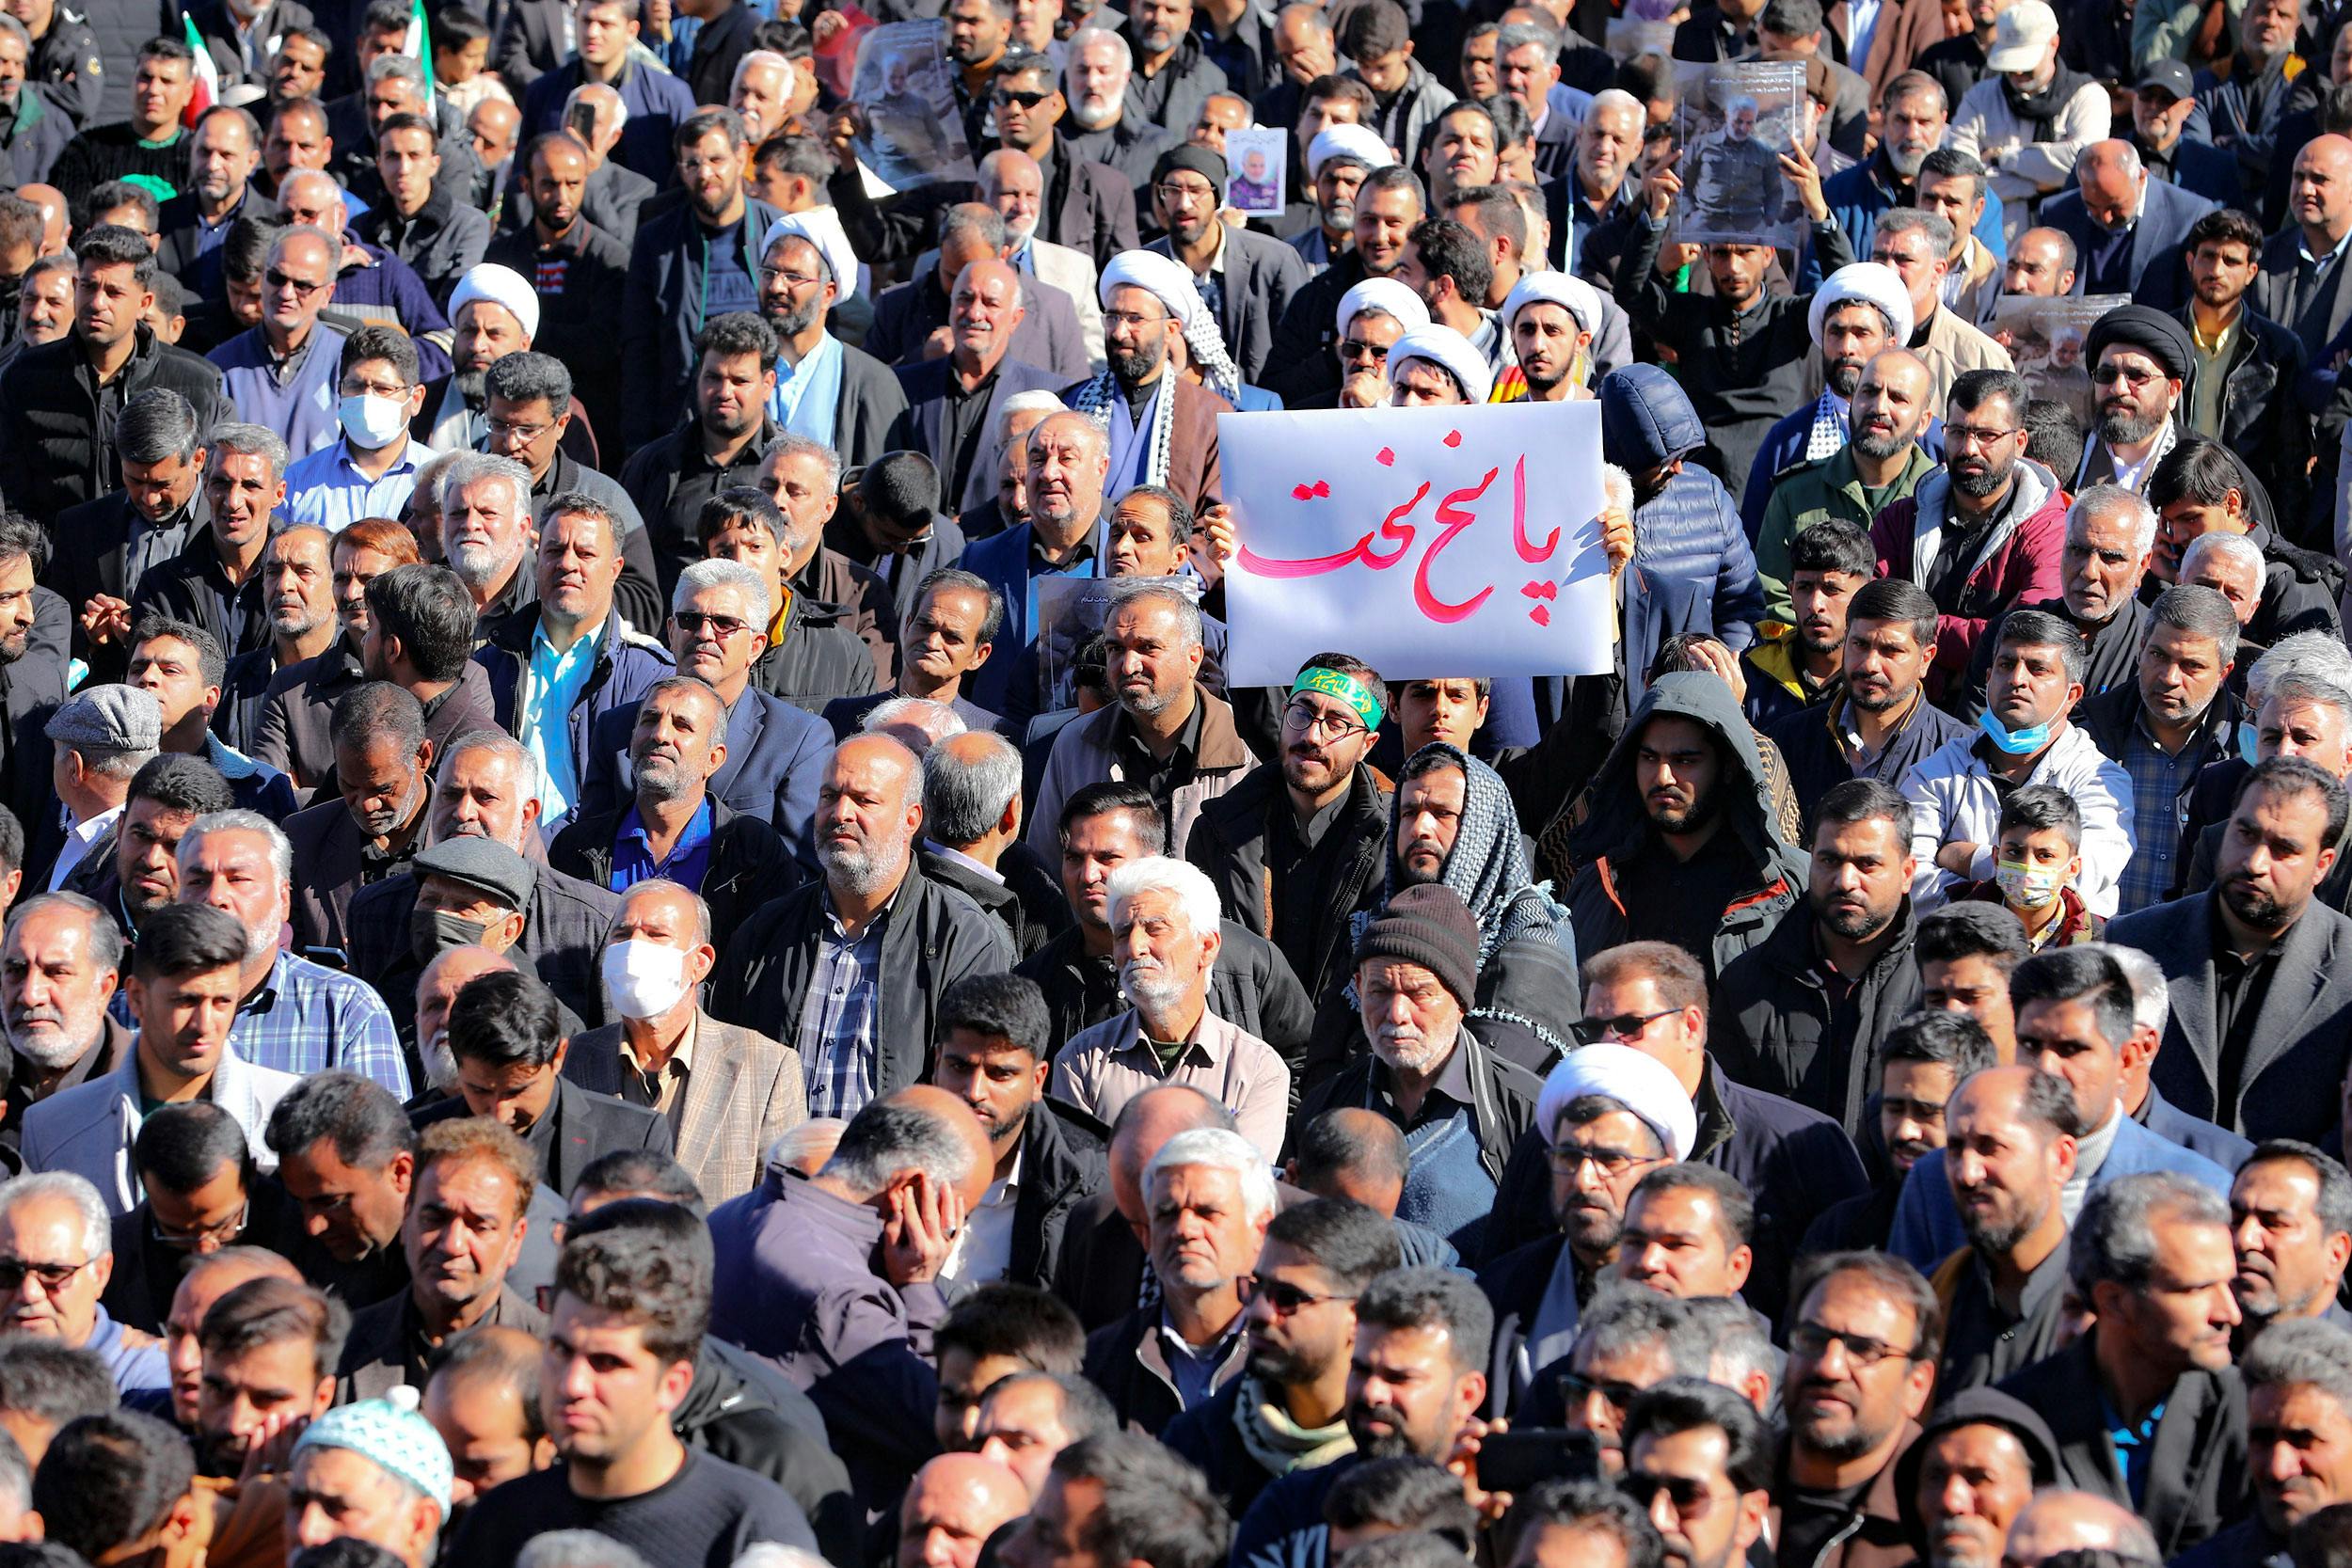 تجمع در مراسم تشییع کشتگان انفجارهای کرمان. یک نفر یک برگ کاغذ بالا گرفته که روی آن نوشته: پاسخ سخت